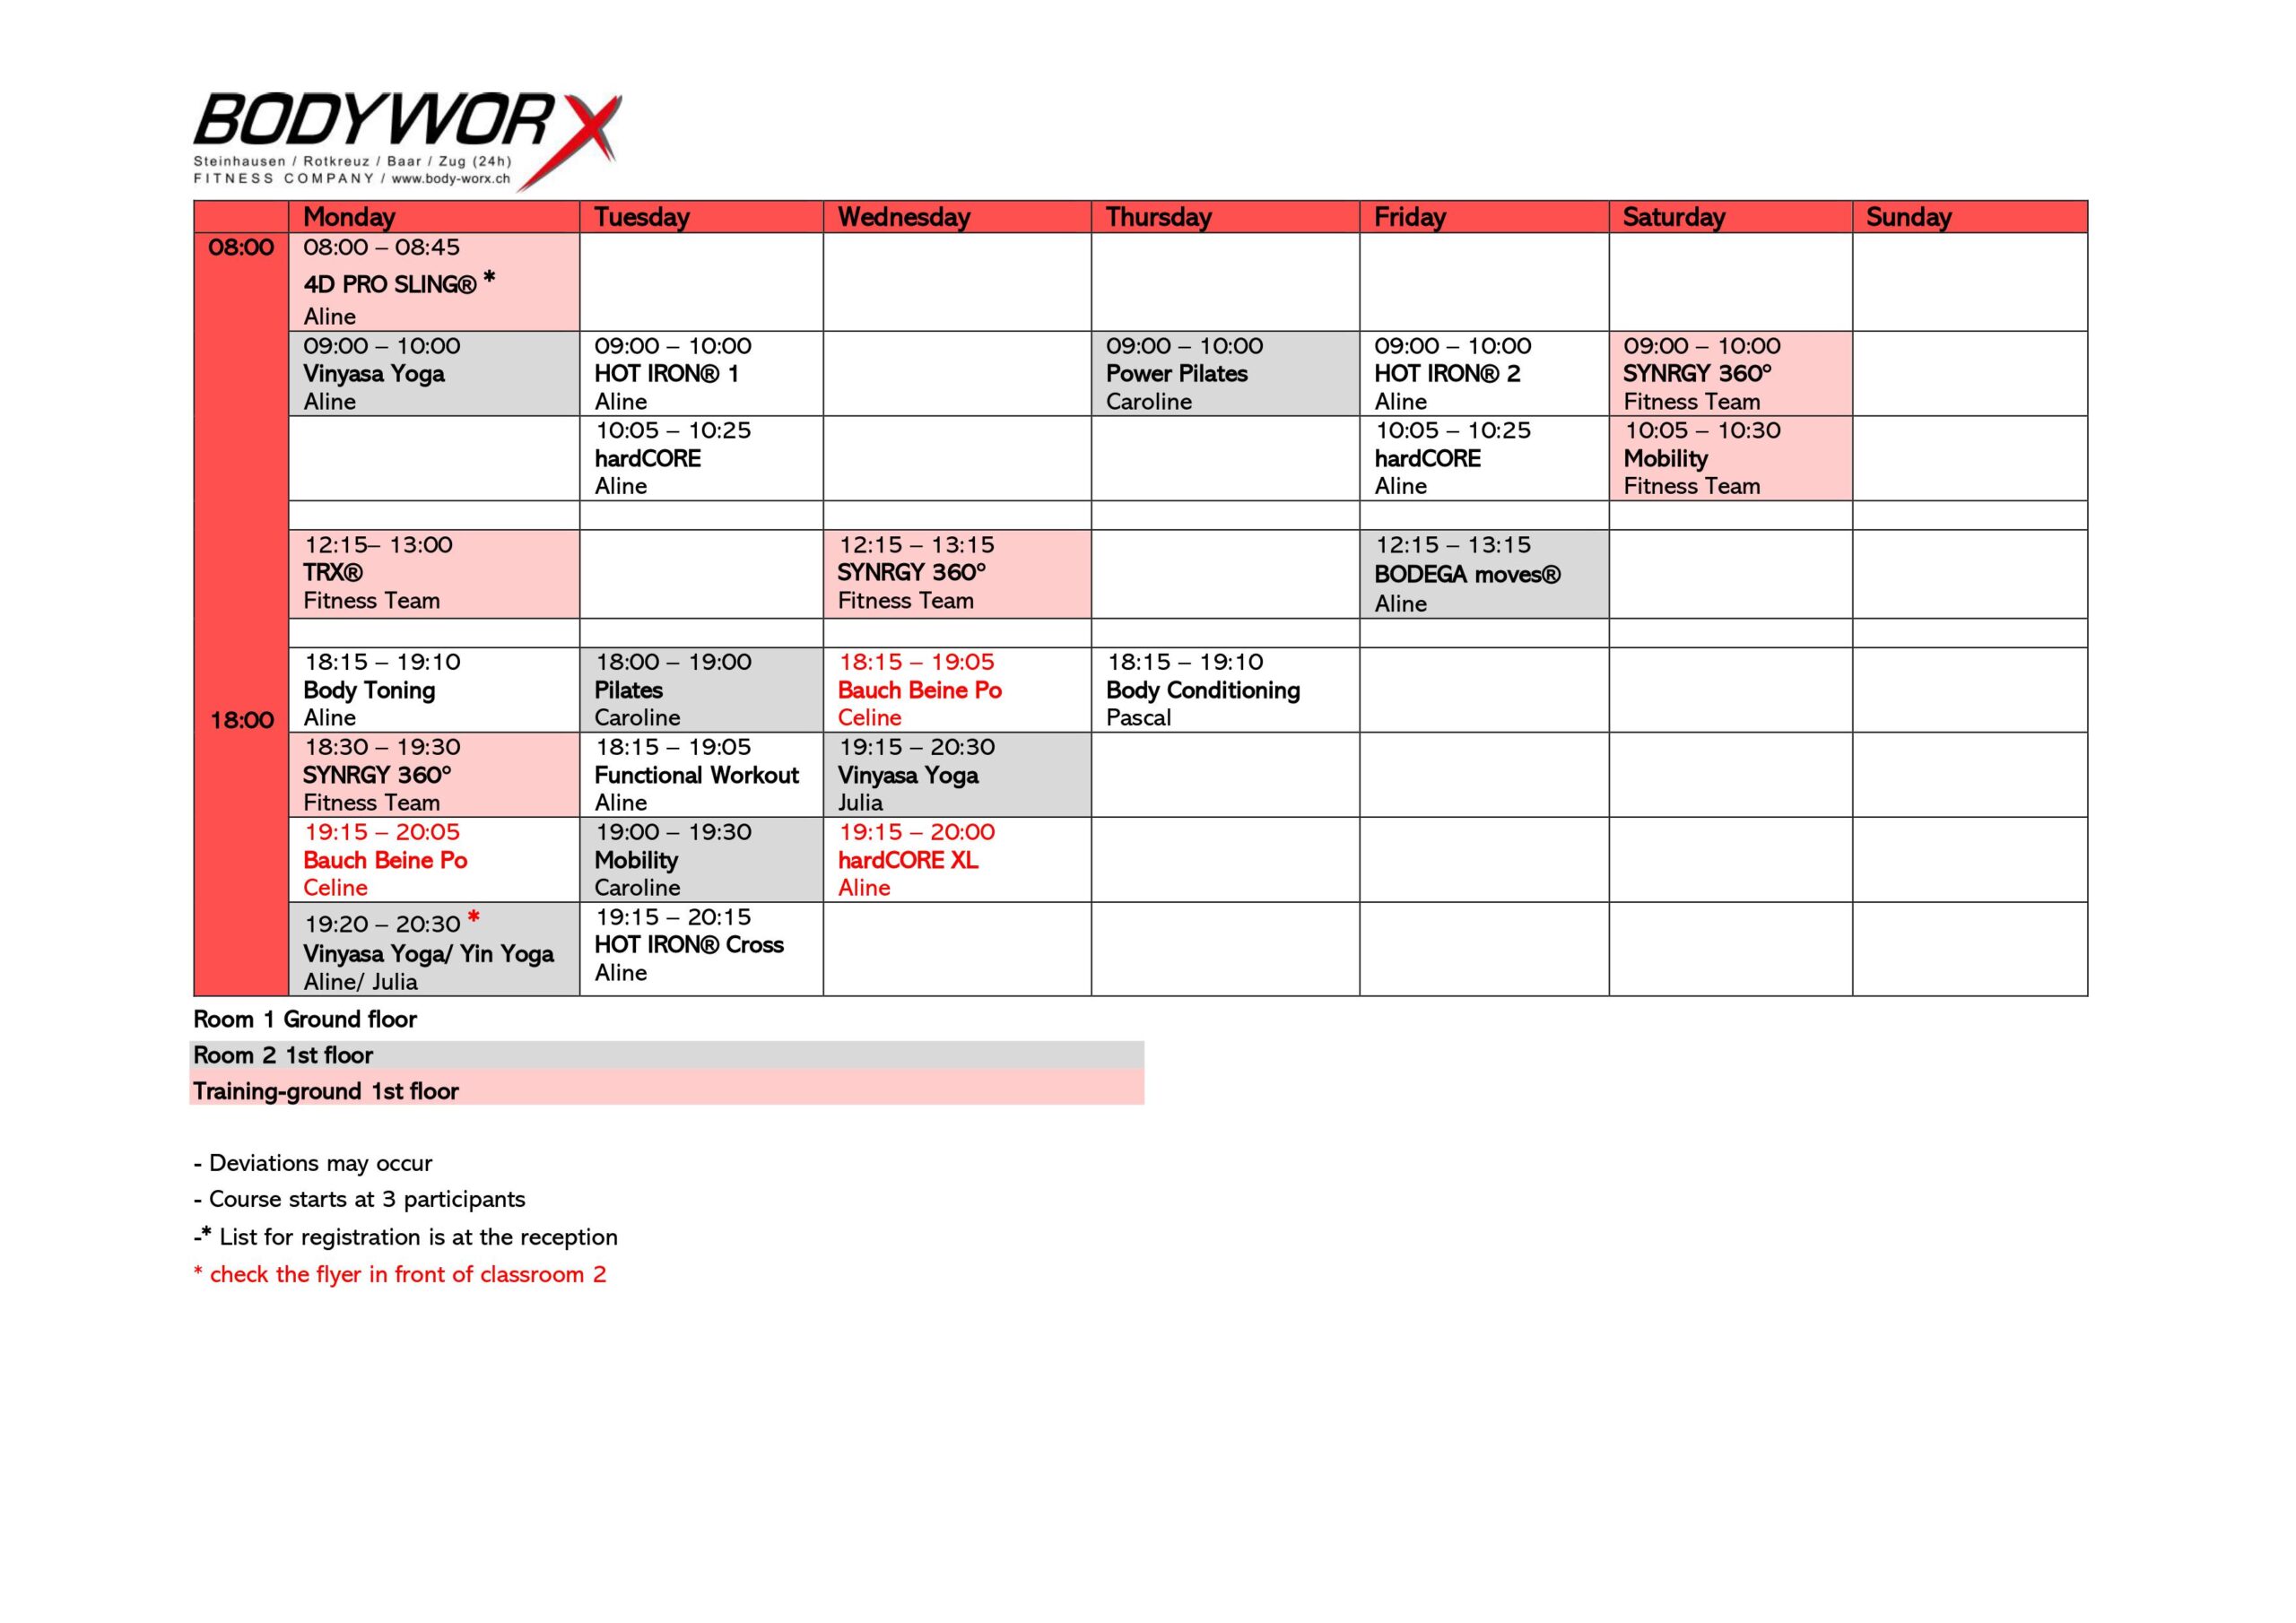 Course schedule | BodyWorx